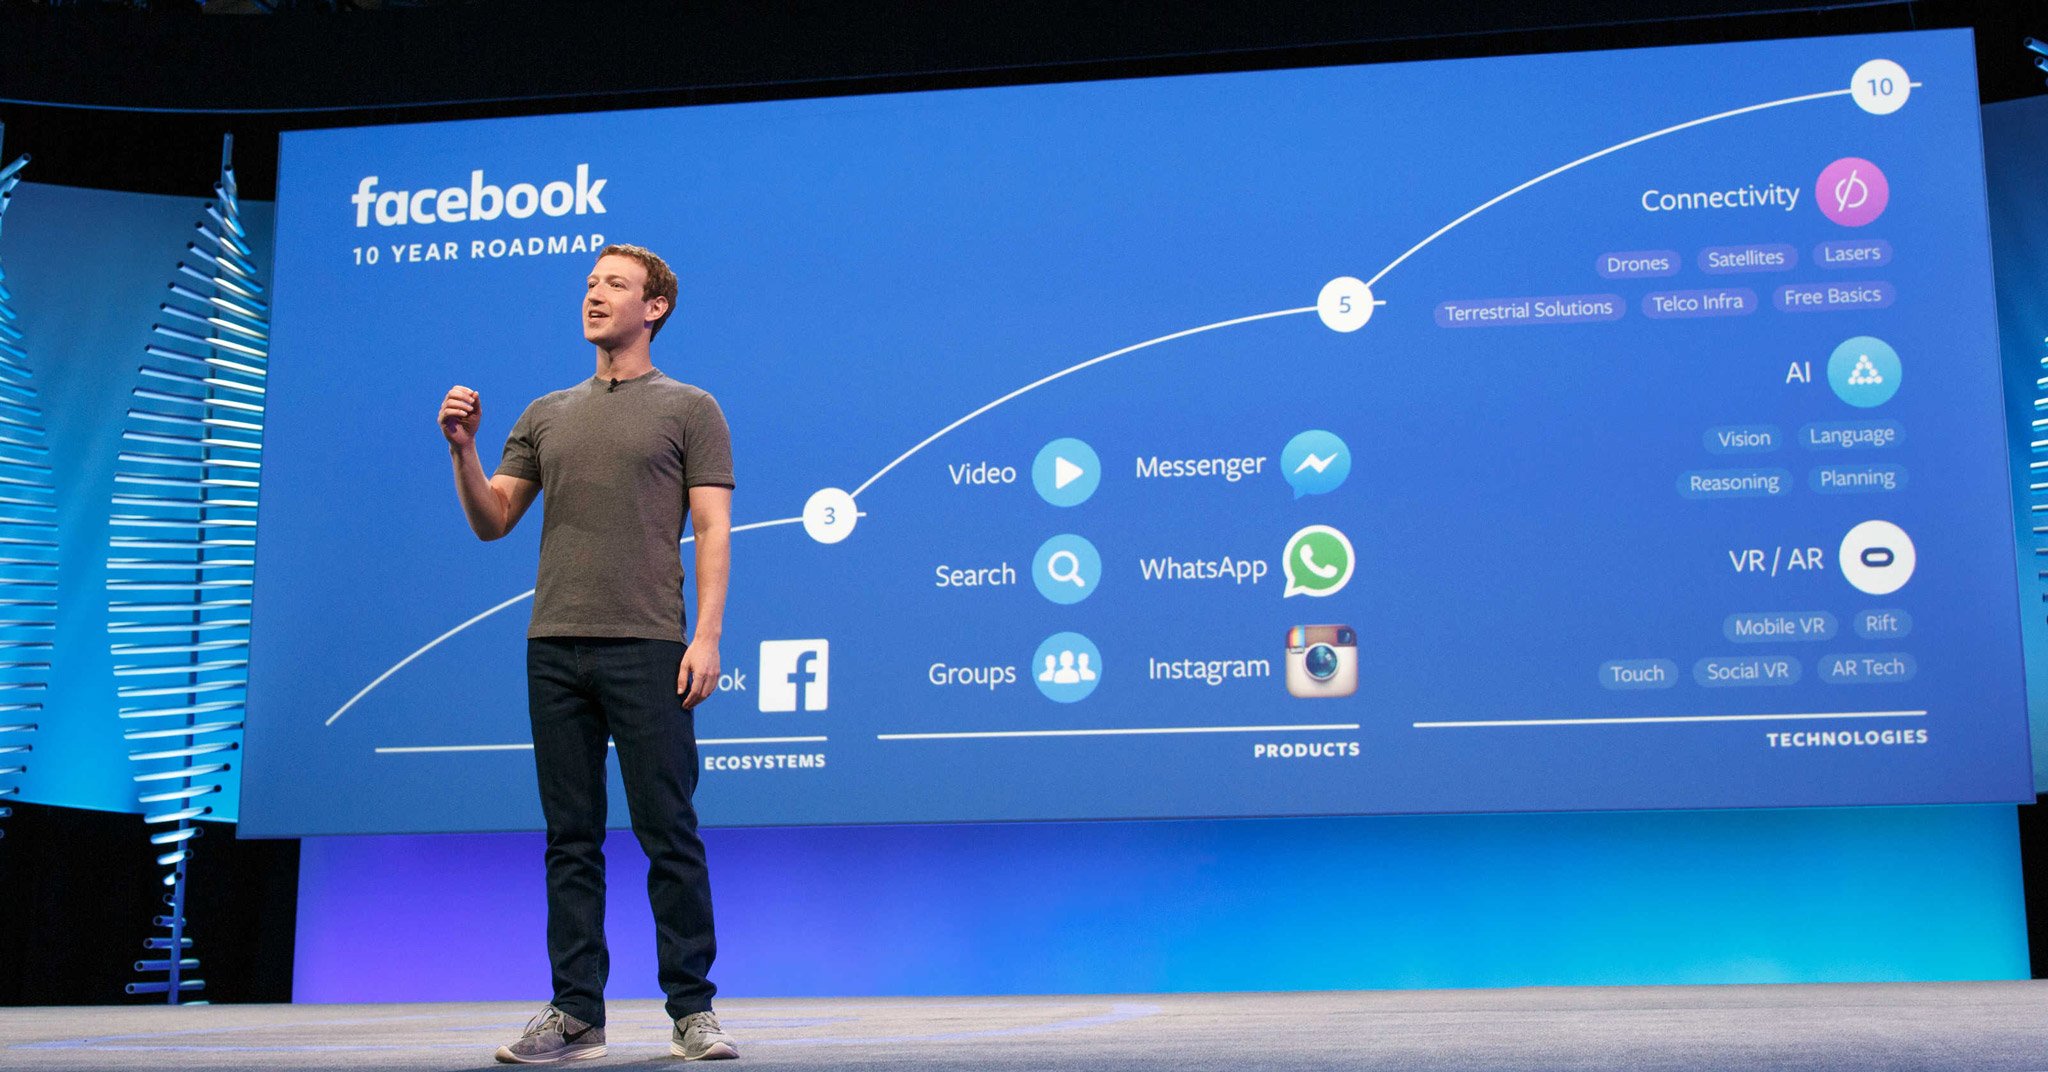 Tổng hợp thông tin vụ rò rỉ thông tin 50 triệu người dùng Facebook và lời nói của CEO Mark Zuck